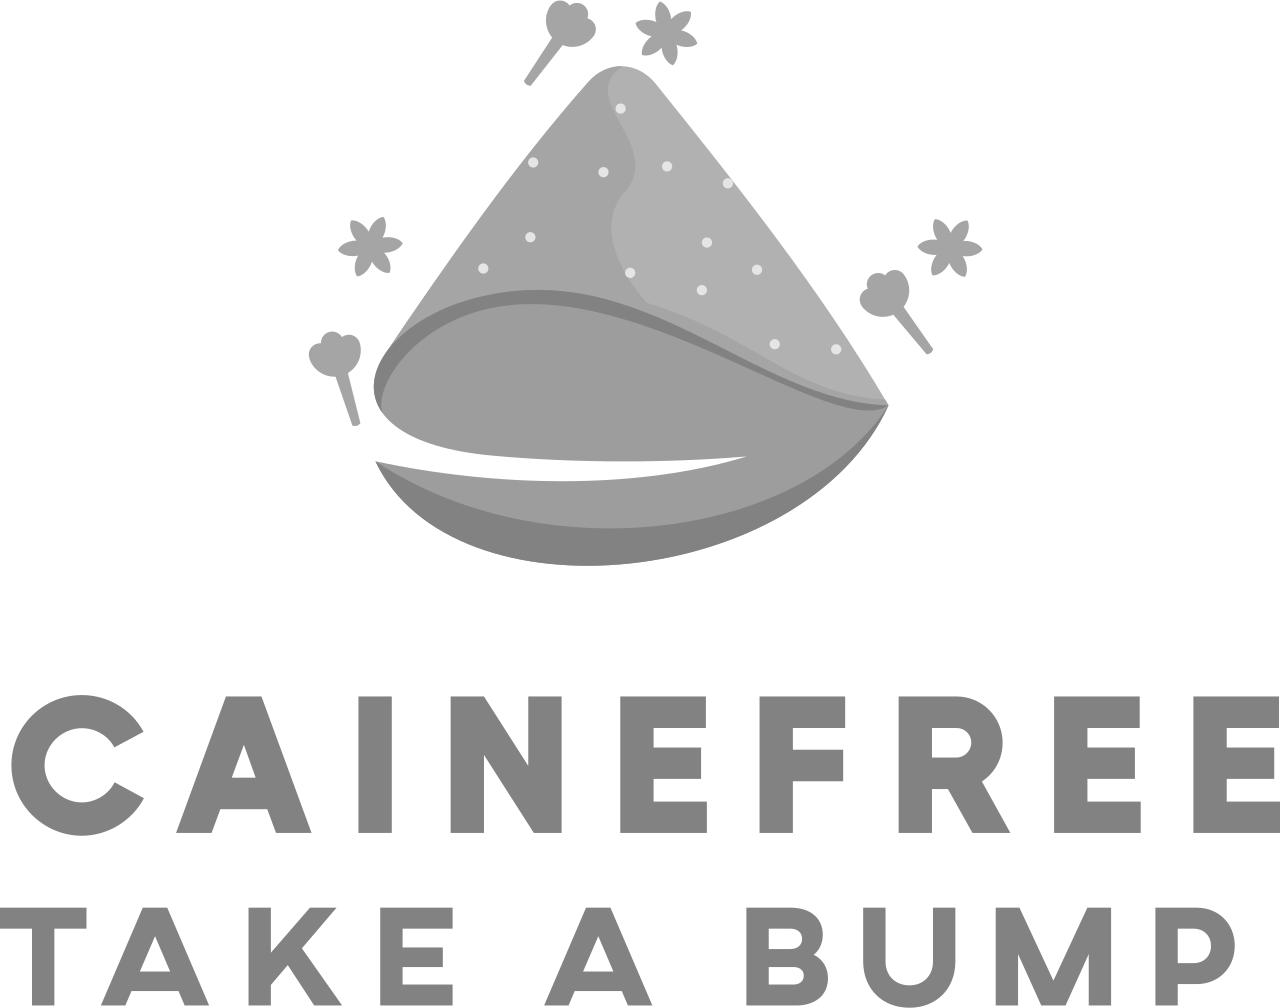 cainefree's logo